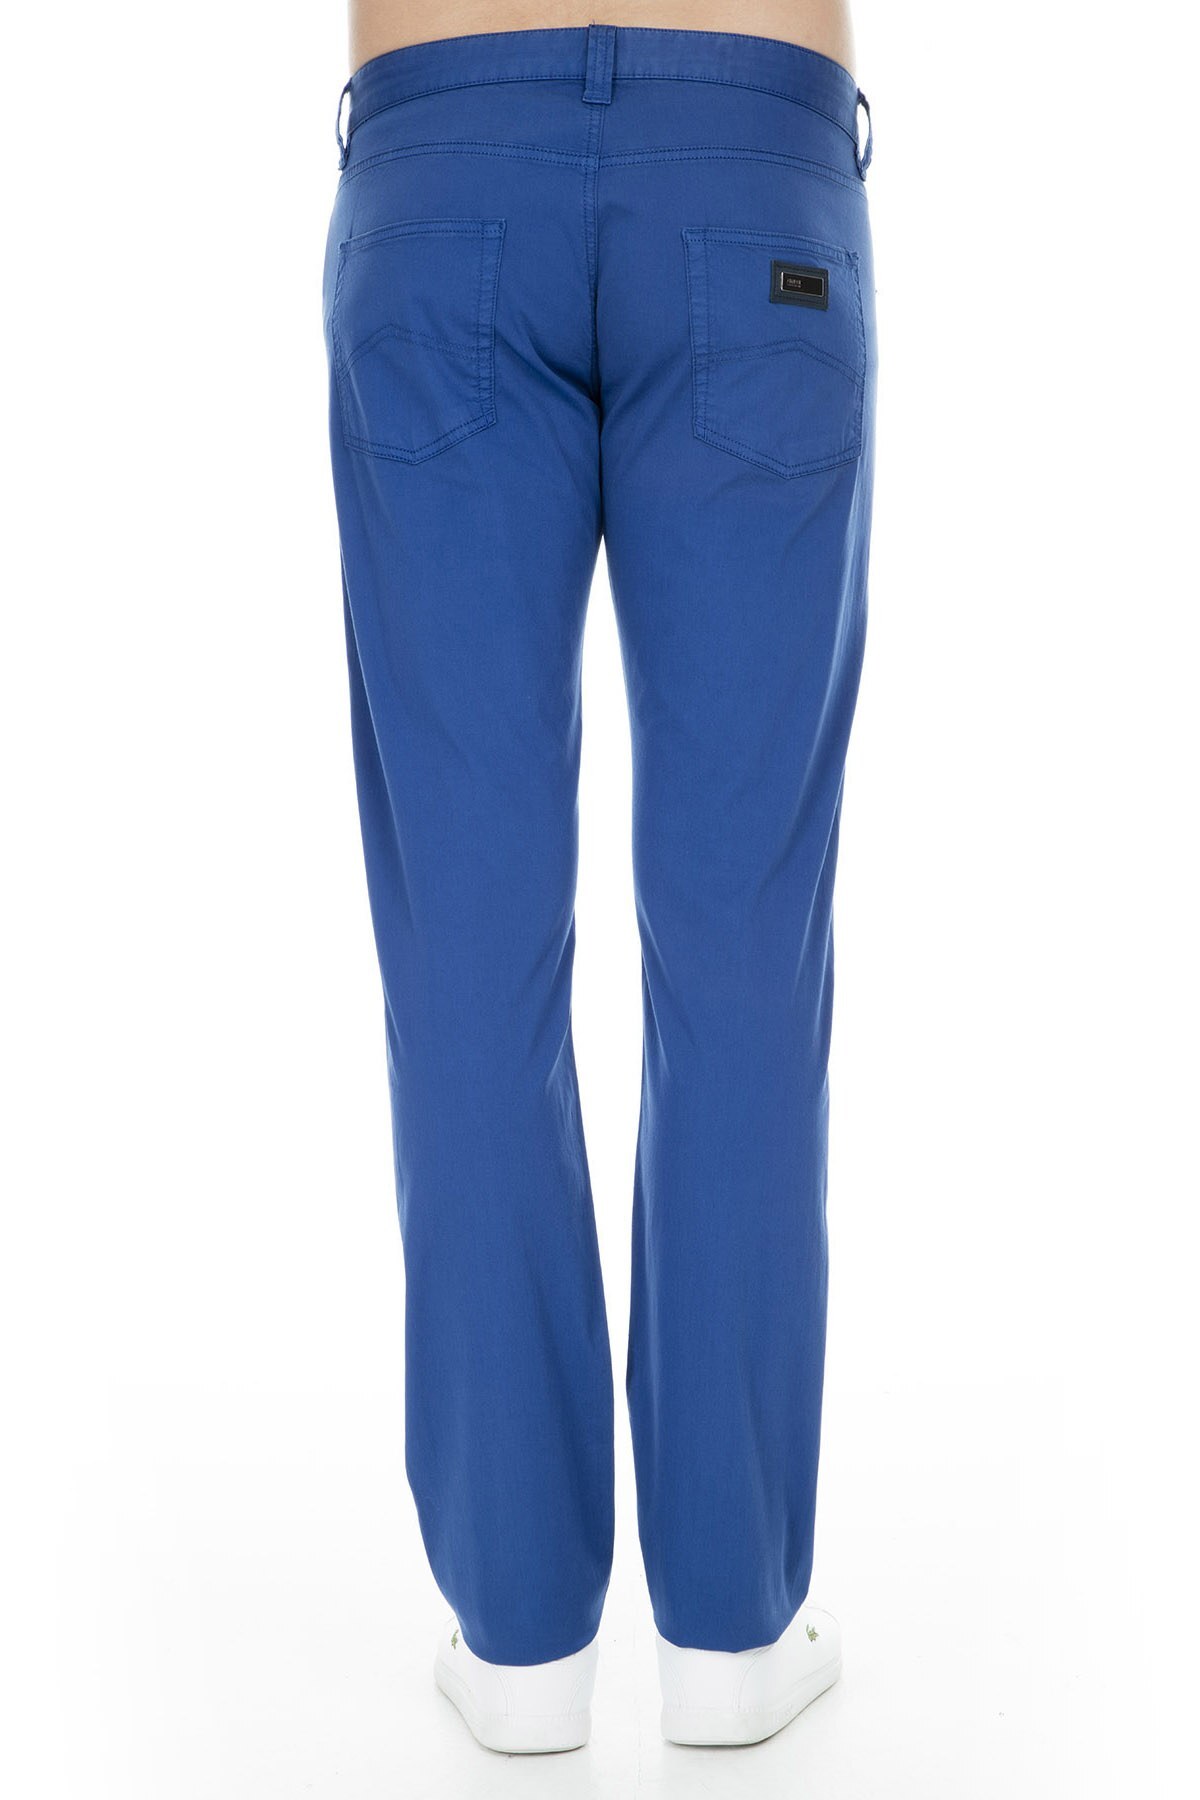 Armani Collezioni Jeans Erkek Pamuklu Pantolon TCPJ06TCS01 